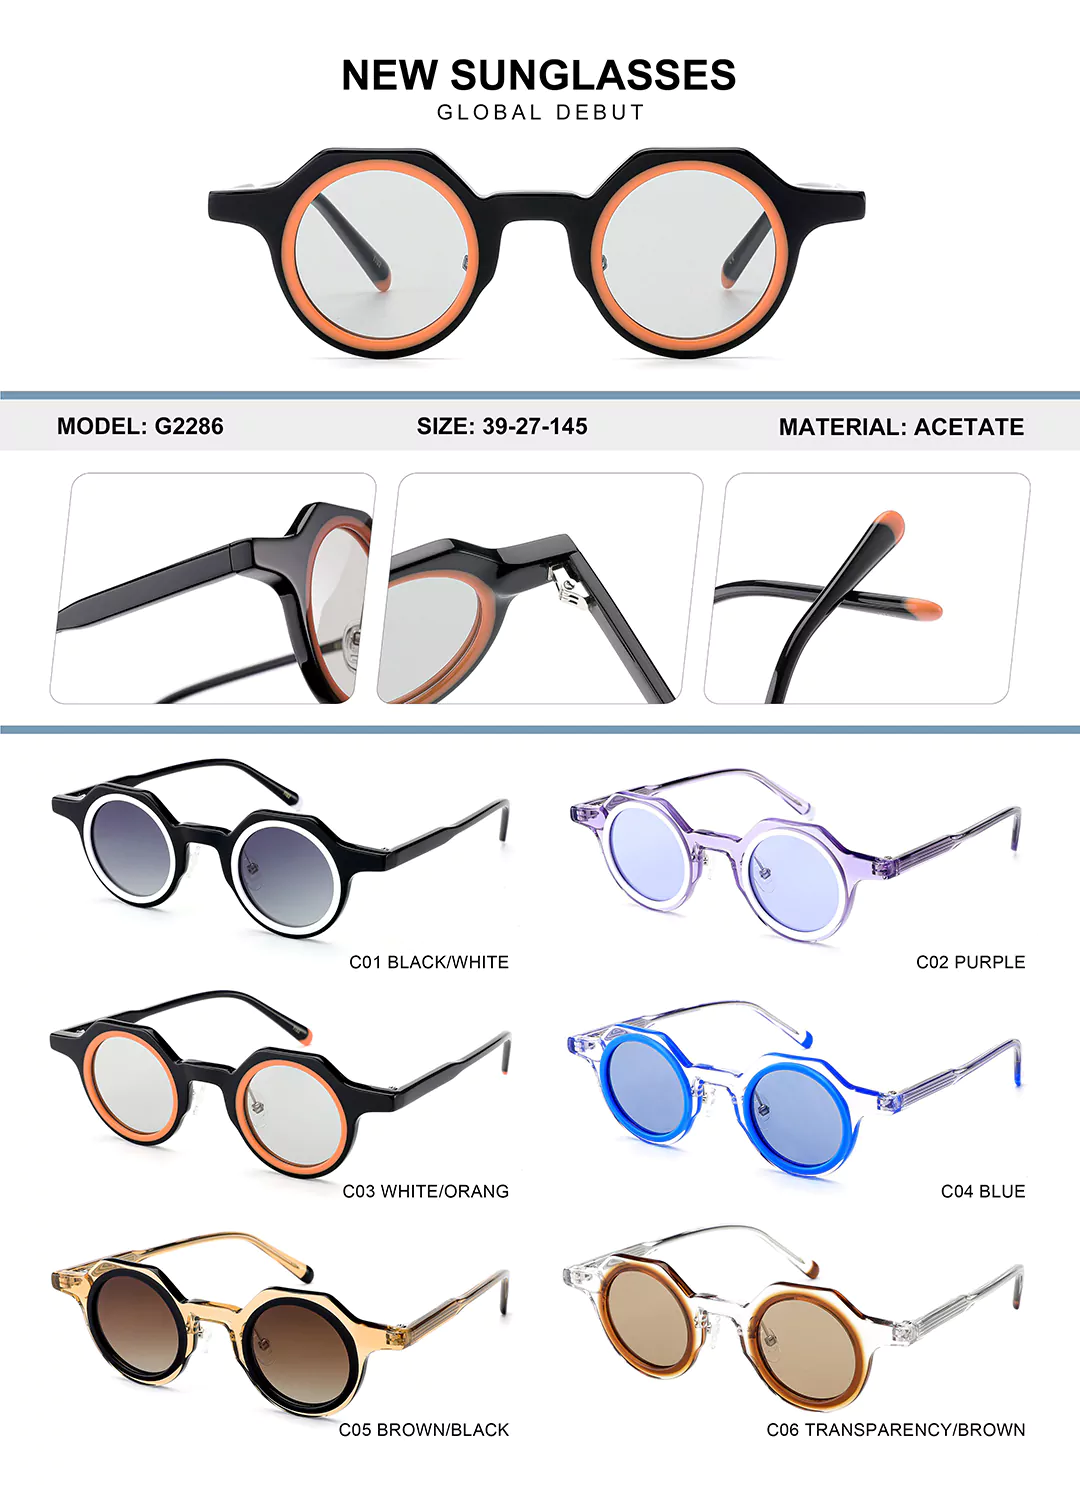 Kids Acetate Glasses G2286 Different colors shown, detail shots, size